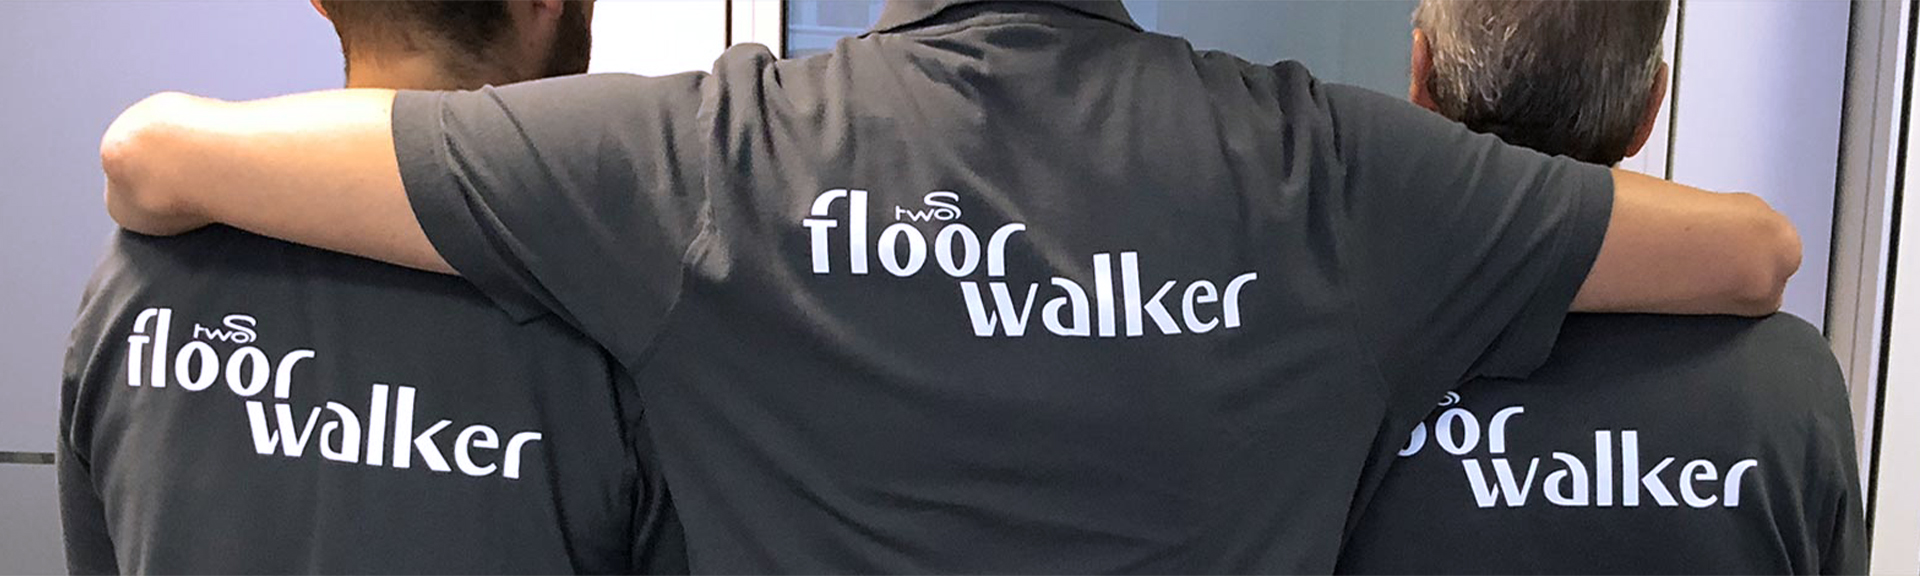 Floor Walker Team